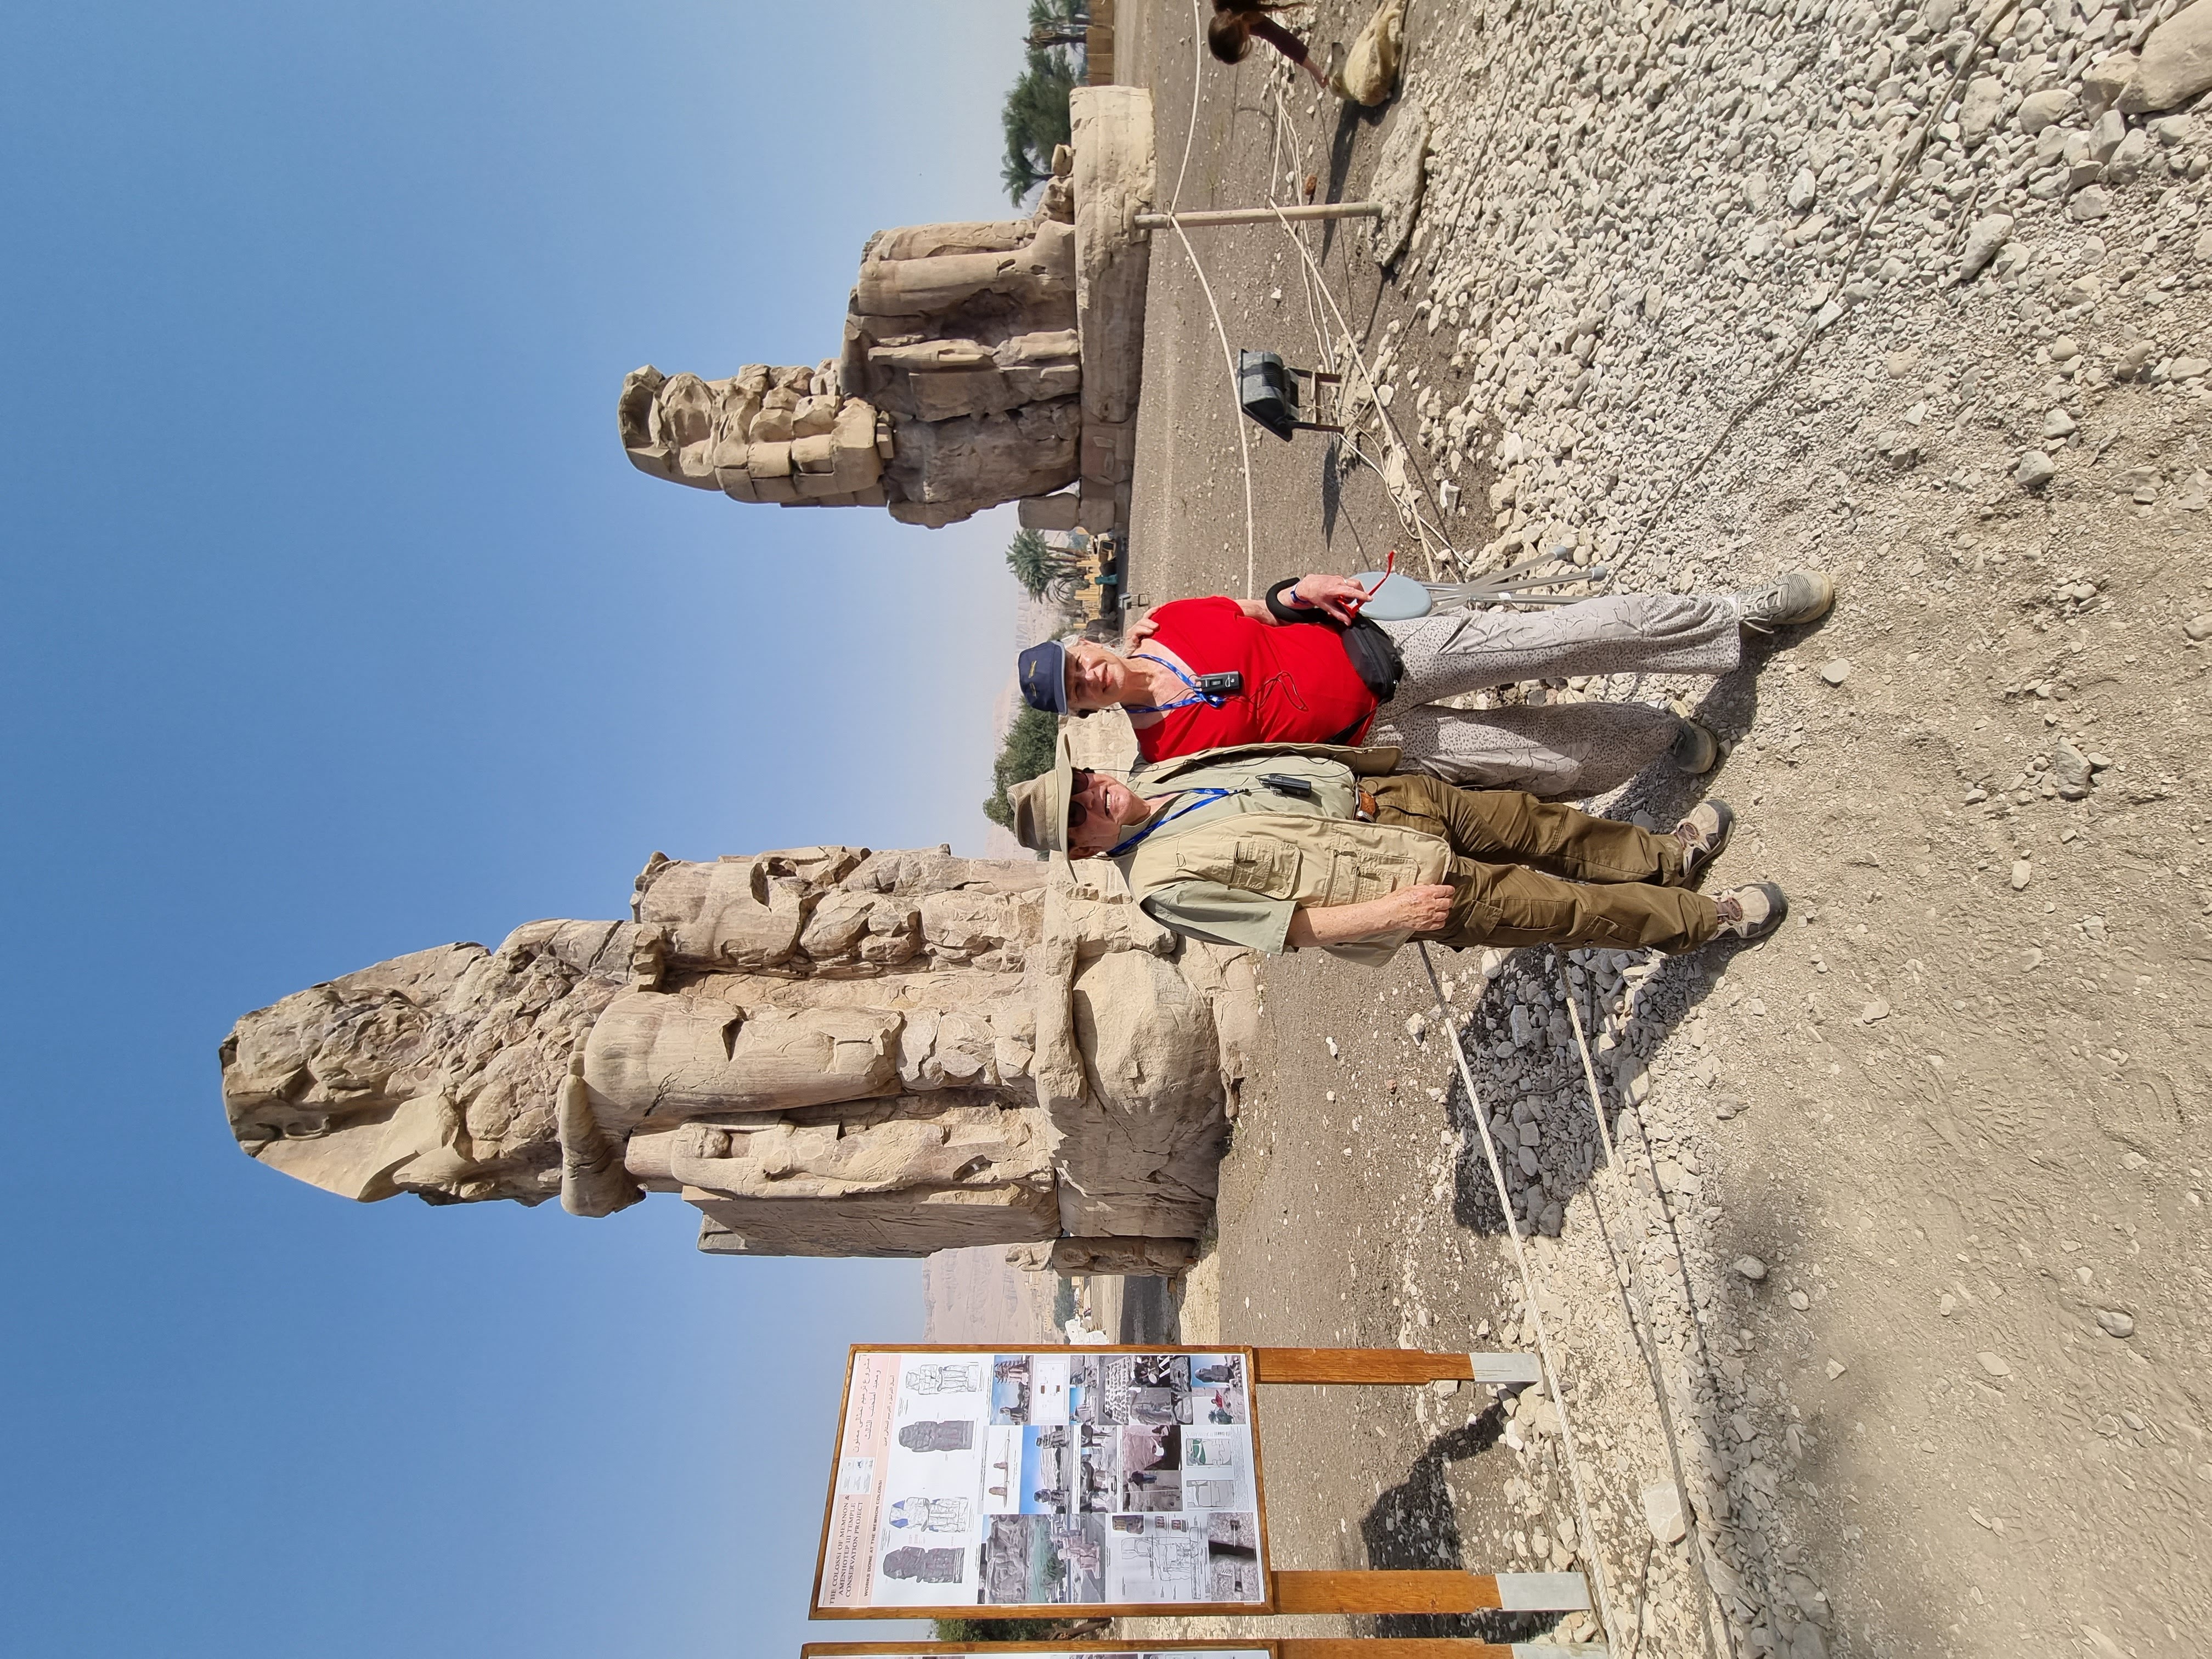 על רקע מקדש ענק שחרב ברעידת אדמה כבר במאה הראשונה לפנהס. שני פסלי הענק נותרו